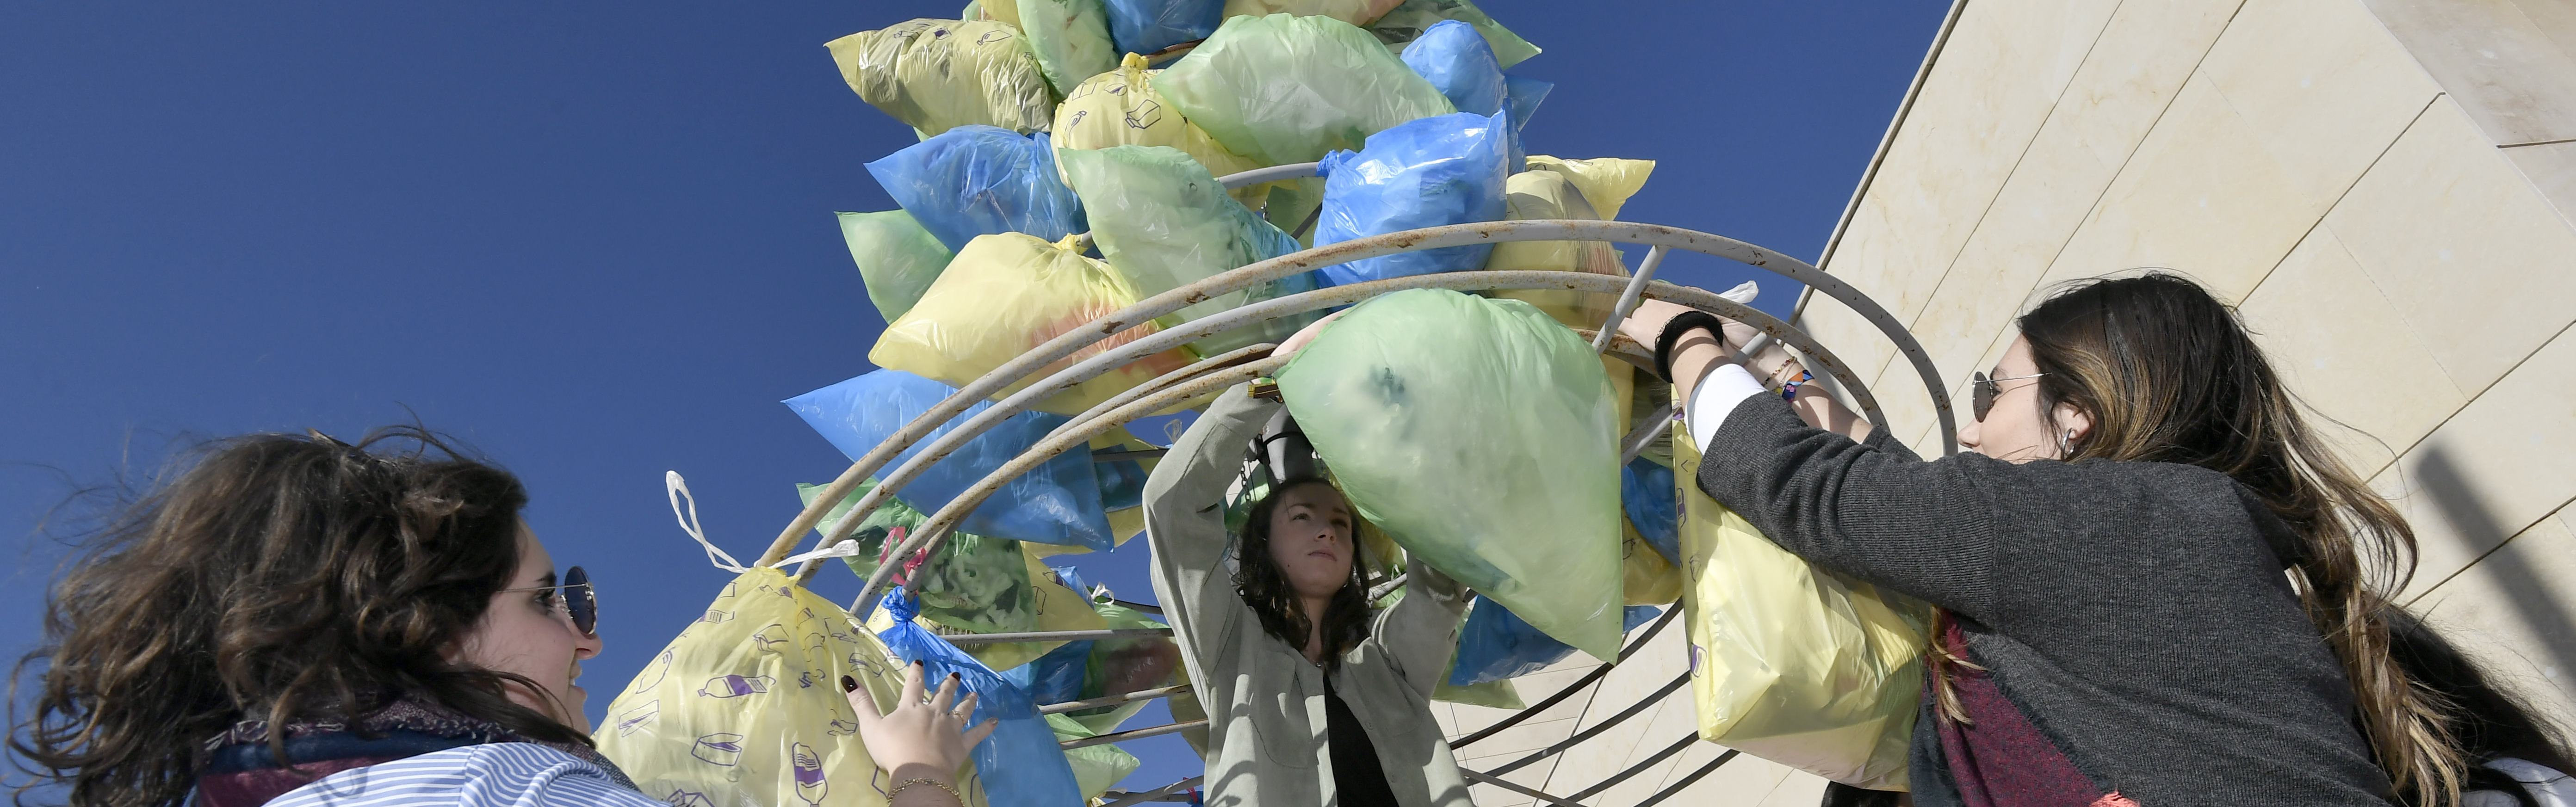 La UMU instala dos árboles de Navidad fabricados con las bolsas de plástico recogidas en una campaña de concienciación ambiental